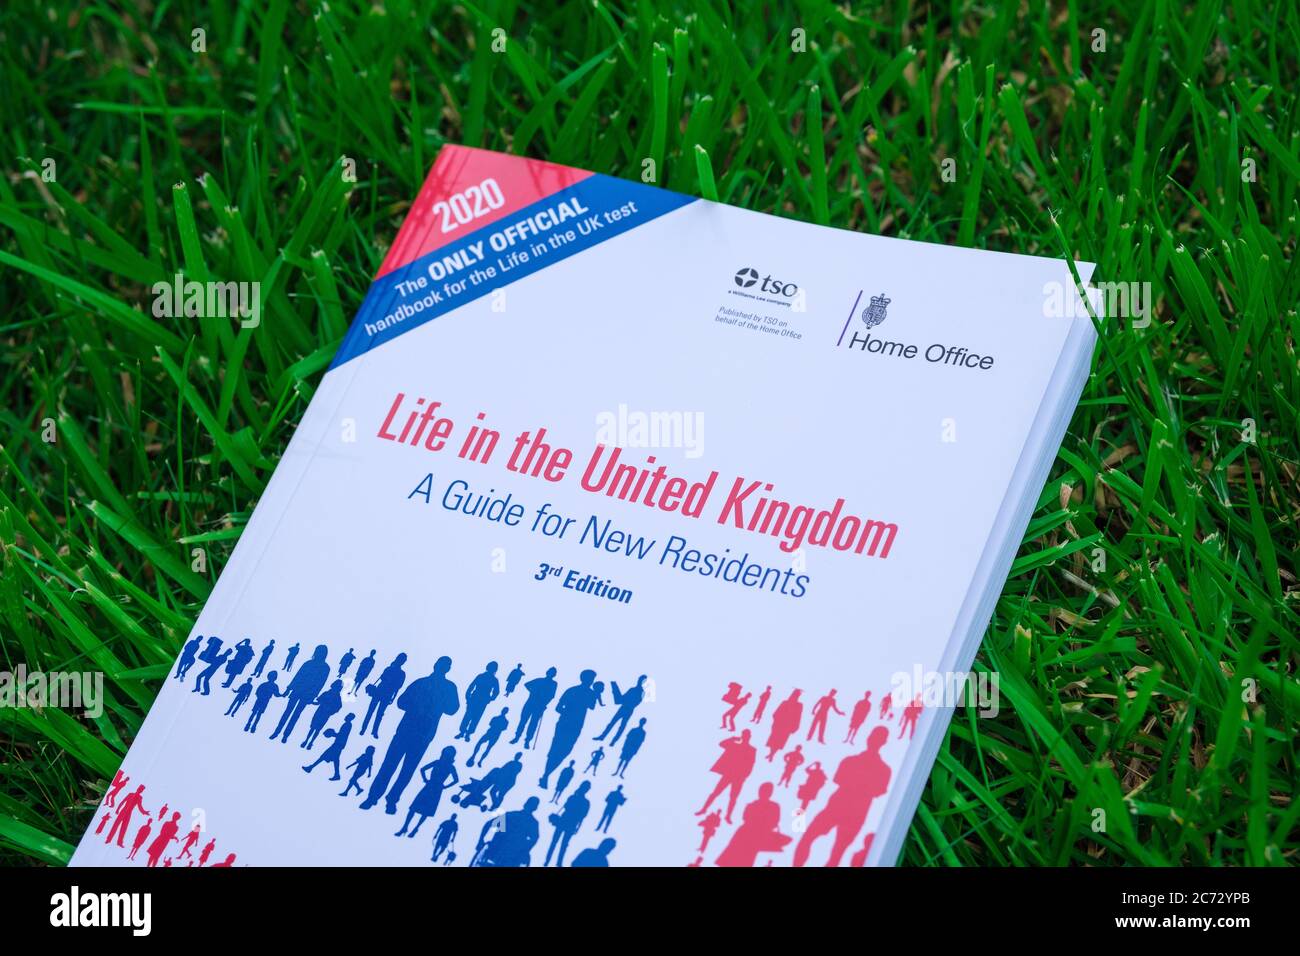 Stone / Reino Unido - Julio de 13 2020: Libro 'Life in the United Kingdom' publicado por Home Office en 2020 colocado en la hierba. La guía oficial para nuevos residentes Foto de stock